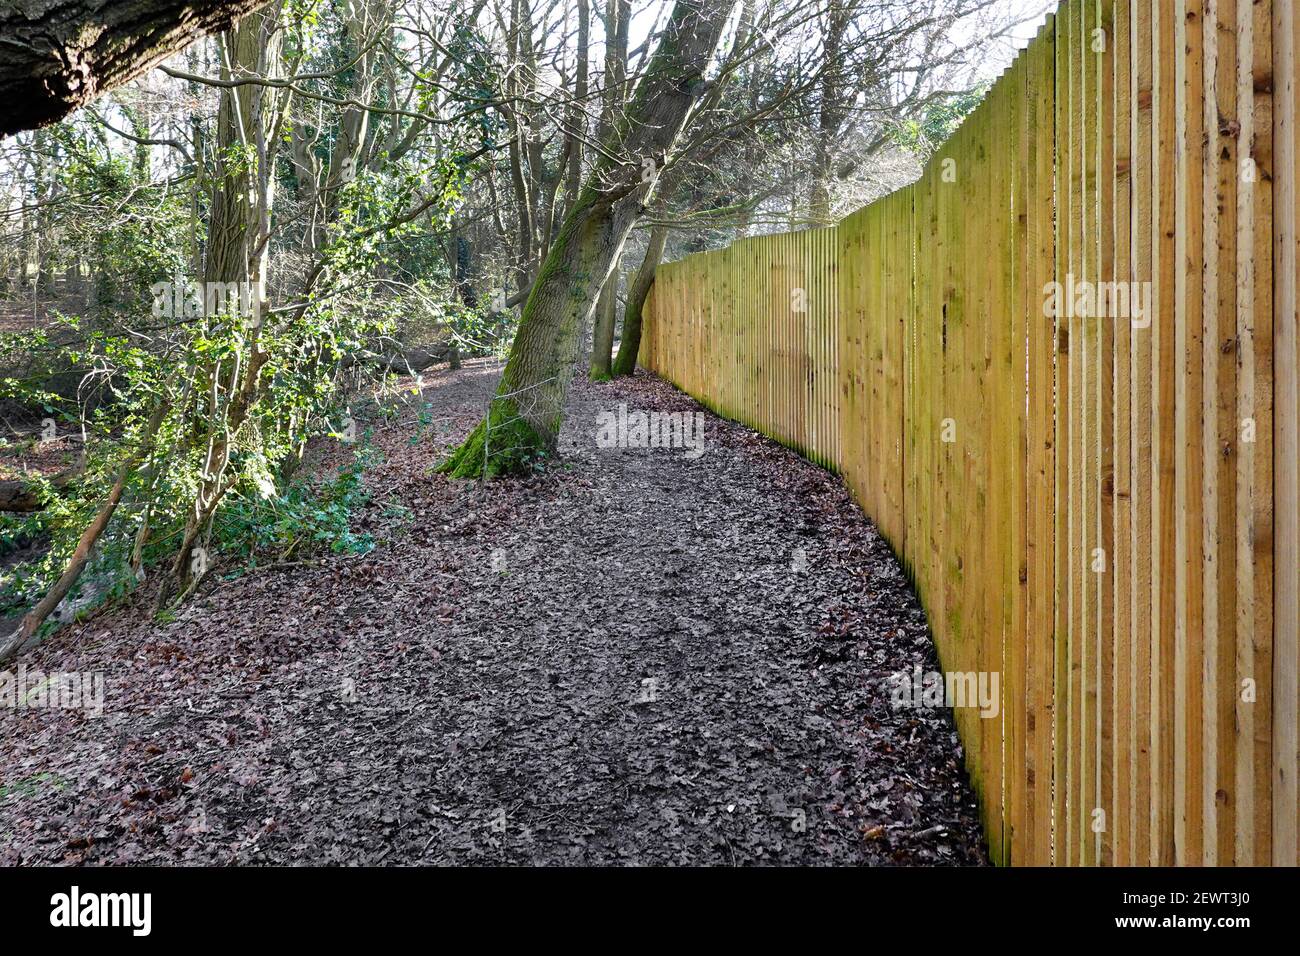 Longue clôture en bois à la propriété de jardin privée le long humide sentier public boueux dans les bois d'hiver haut vertical à bord étroit Timber Angleterre Royaume-Uni Banque D'Images